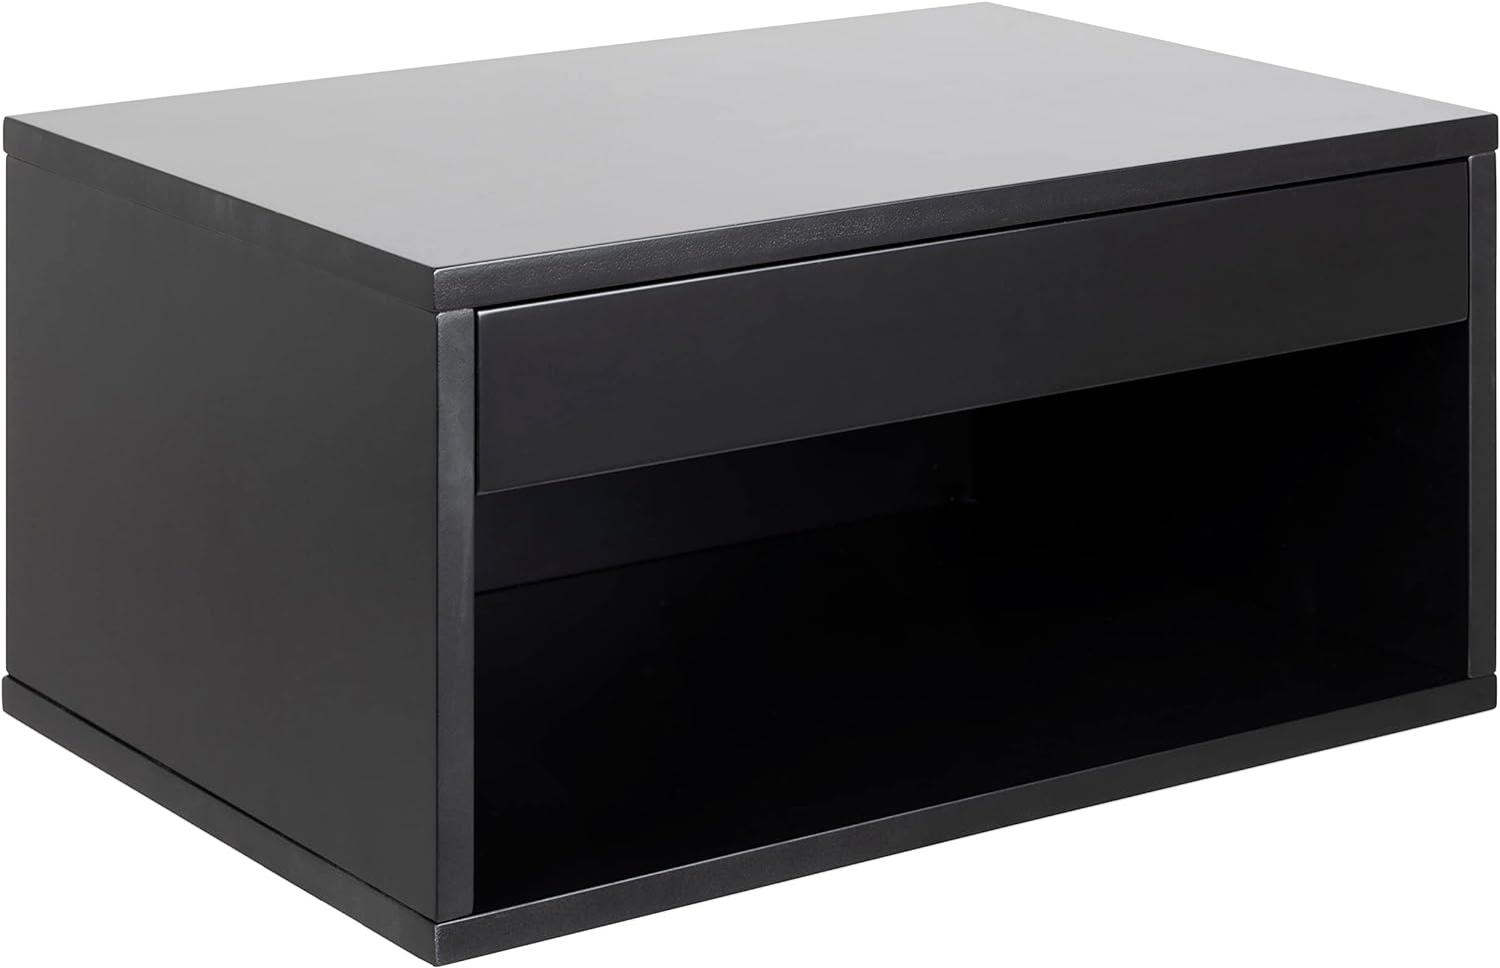 AC Design Furniture Kelda quadratischer schwarzer Nachttisch mit 1 Schublade und offenem Fach, wandmontierter Nachttisch mit Stauraum, geräumiger Nachttisch, Ordnung im Schlafzimmer Bild 1